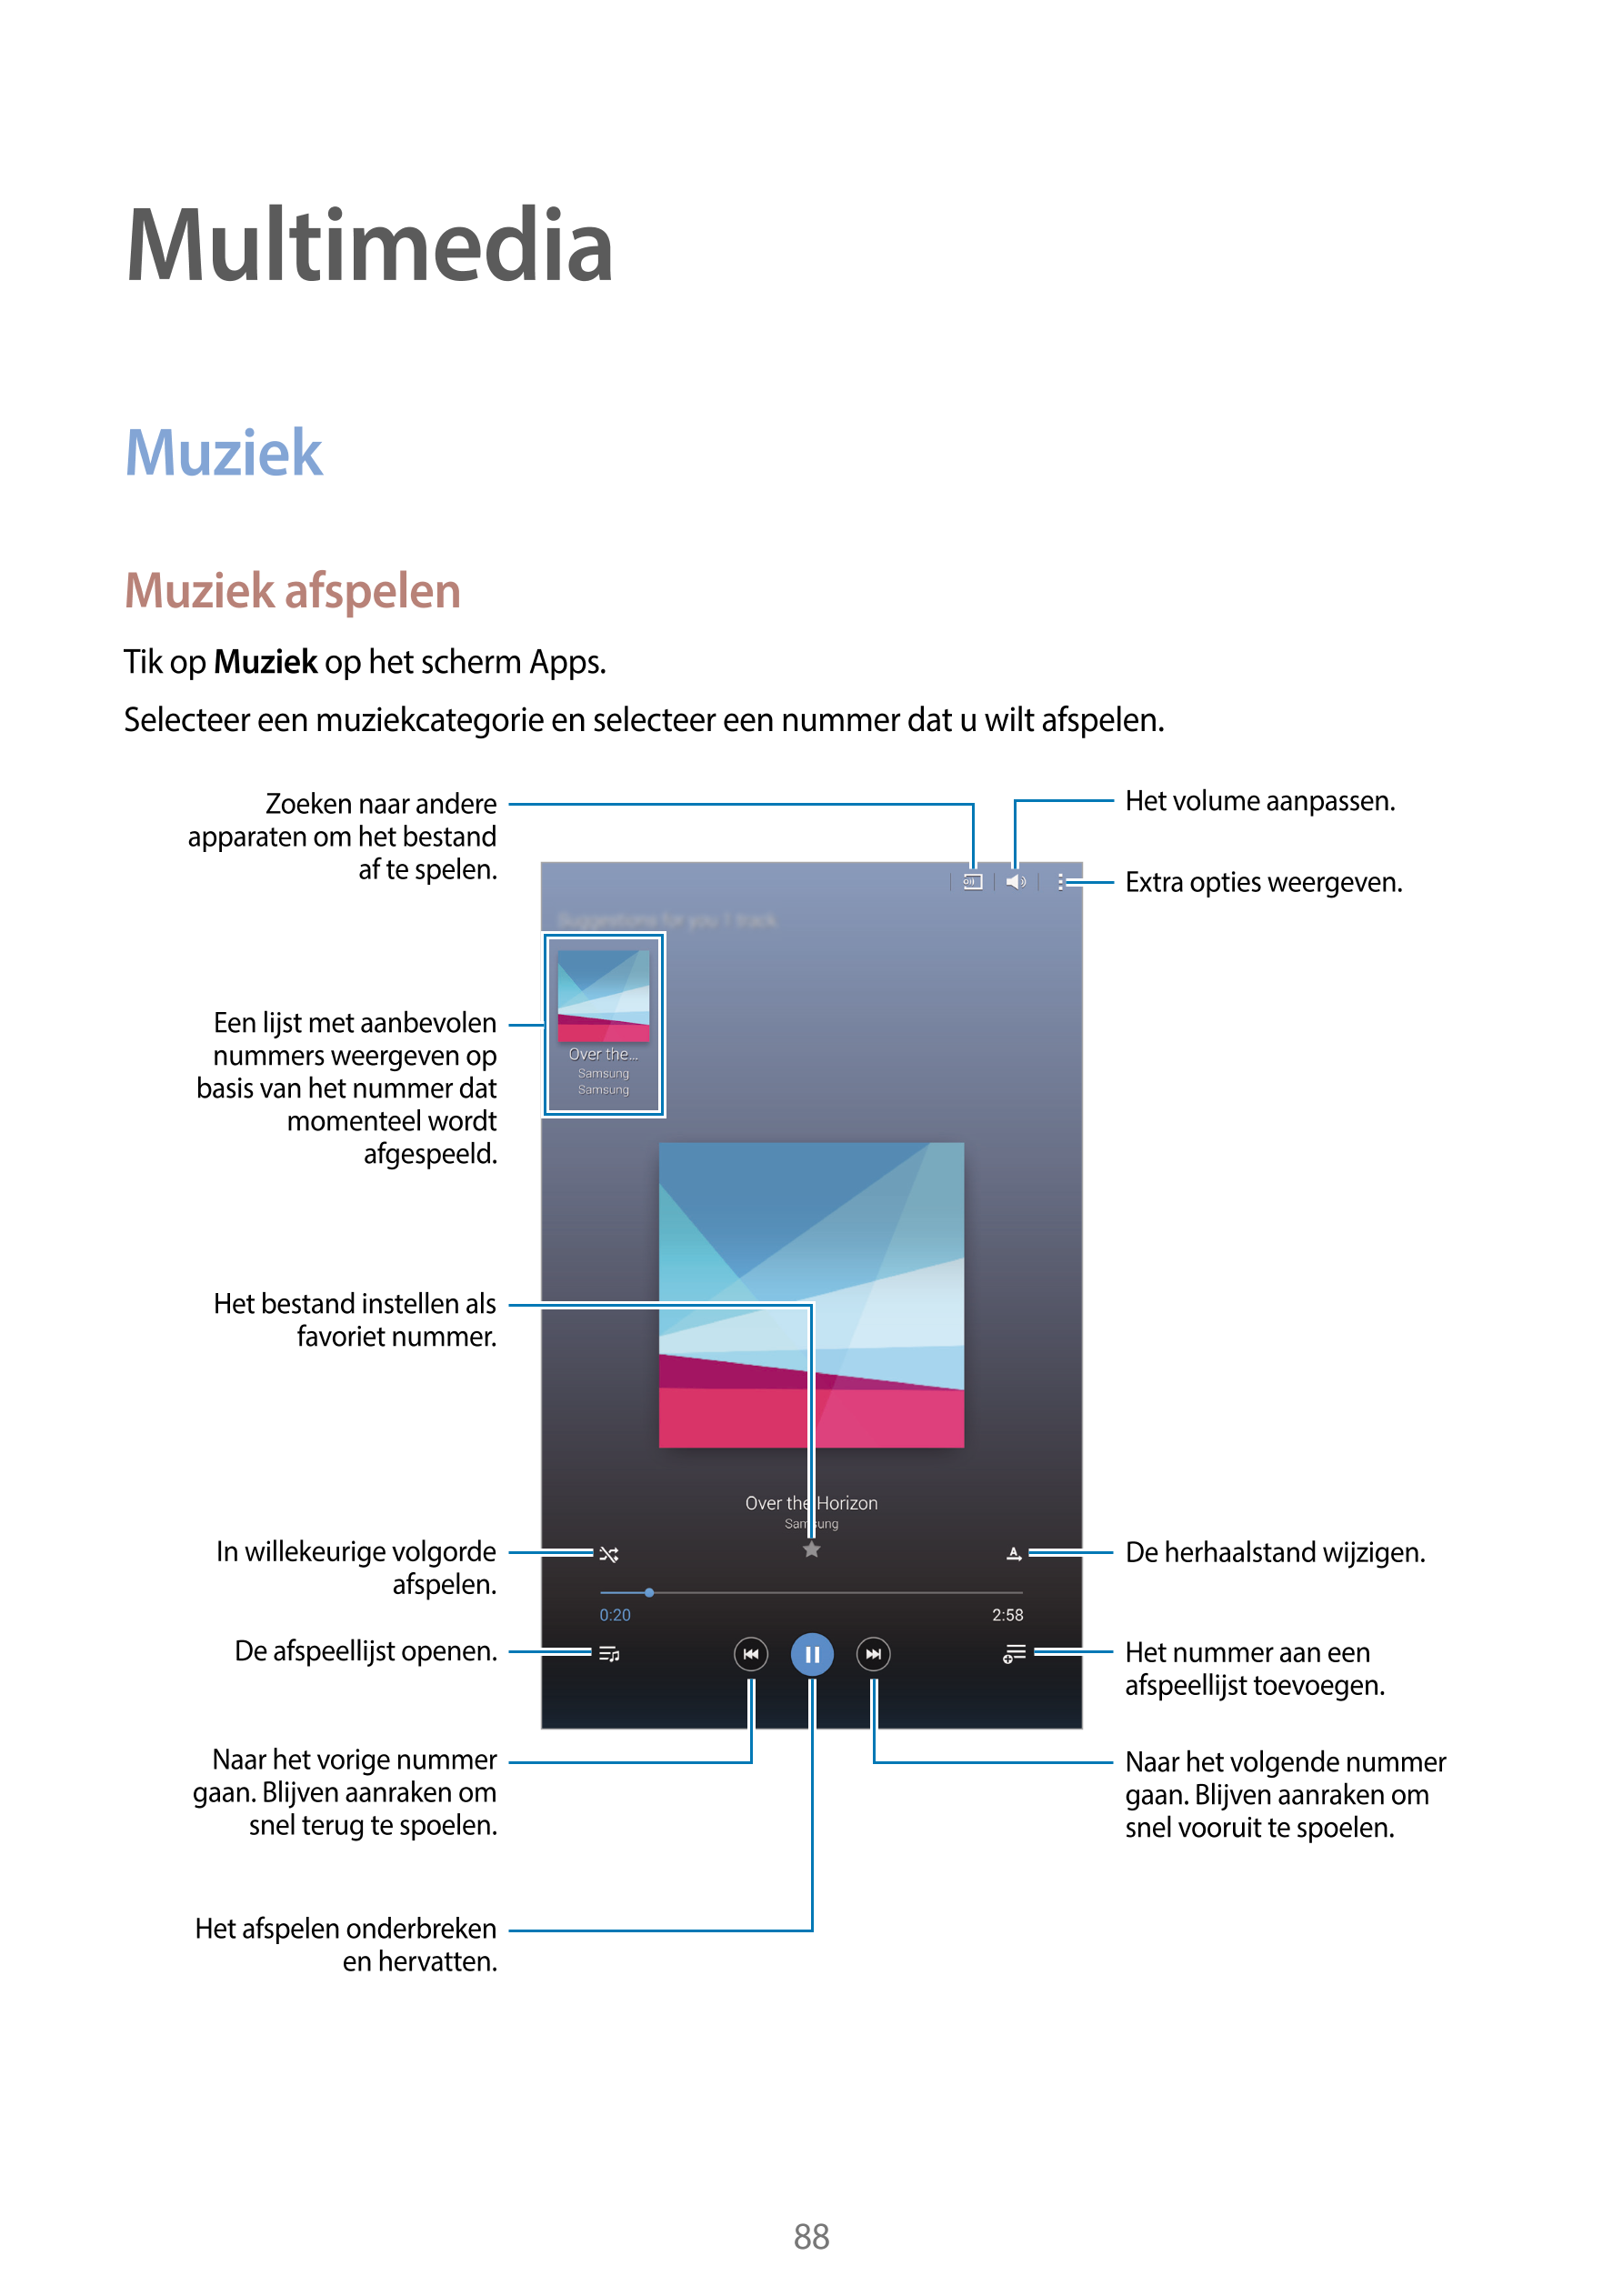 Multimedia
Muziek
Muziek afspelen
Tik op  Muziek op het scherm Apps.
Selecteer een muziekcategorie en selecteer een nummer dat u